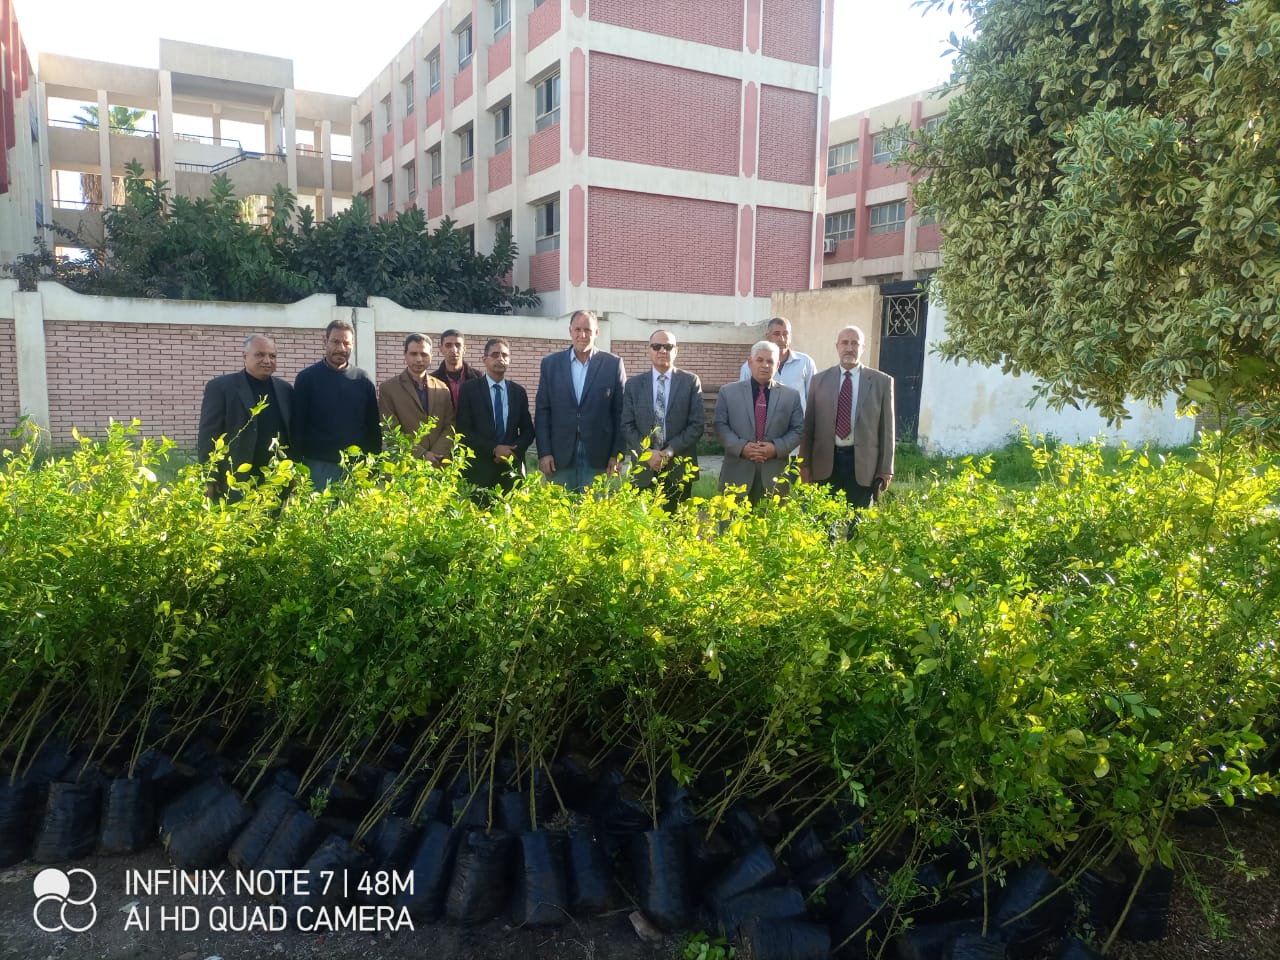 تعليم كفر الشيخ يتسلم 1000 شجرة مثمرة لزراعتها بالمدرسة ضمن مبادرة 100 مليون شجرة